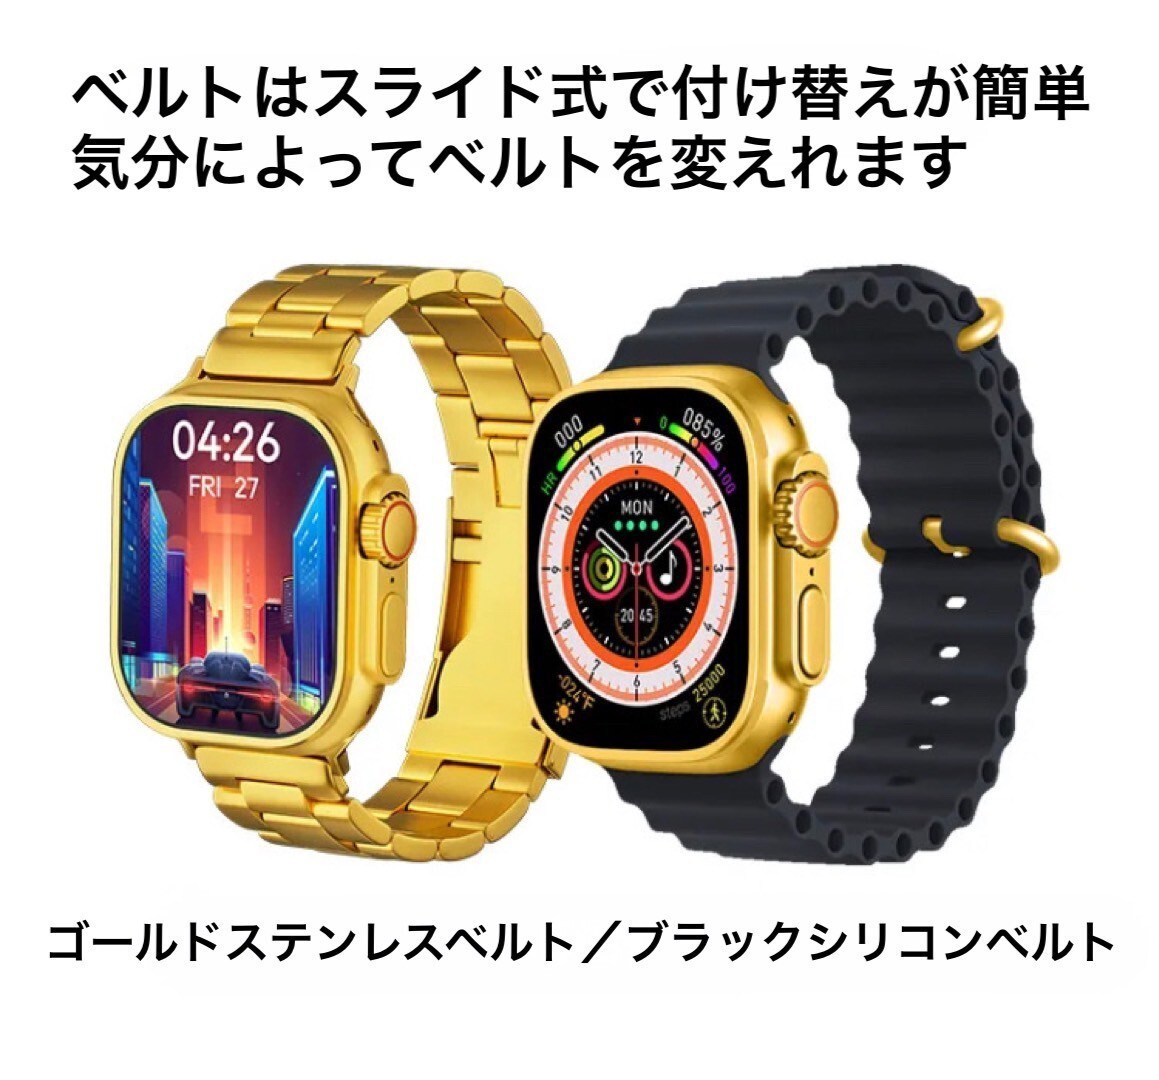 1 иен ~ бесплатная доставка смарт-часы ощущение роскоши Gold 3 вид ремень имеется телефонный разговор функция SNS сообщение температура тела сердце . кровяное давление . средний кислород . число сон Android iPhone